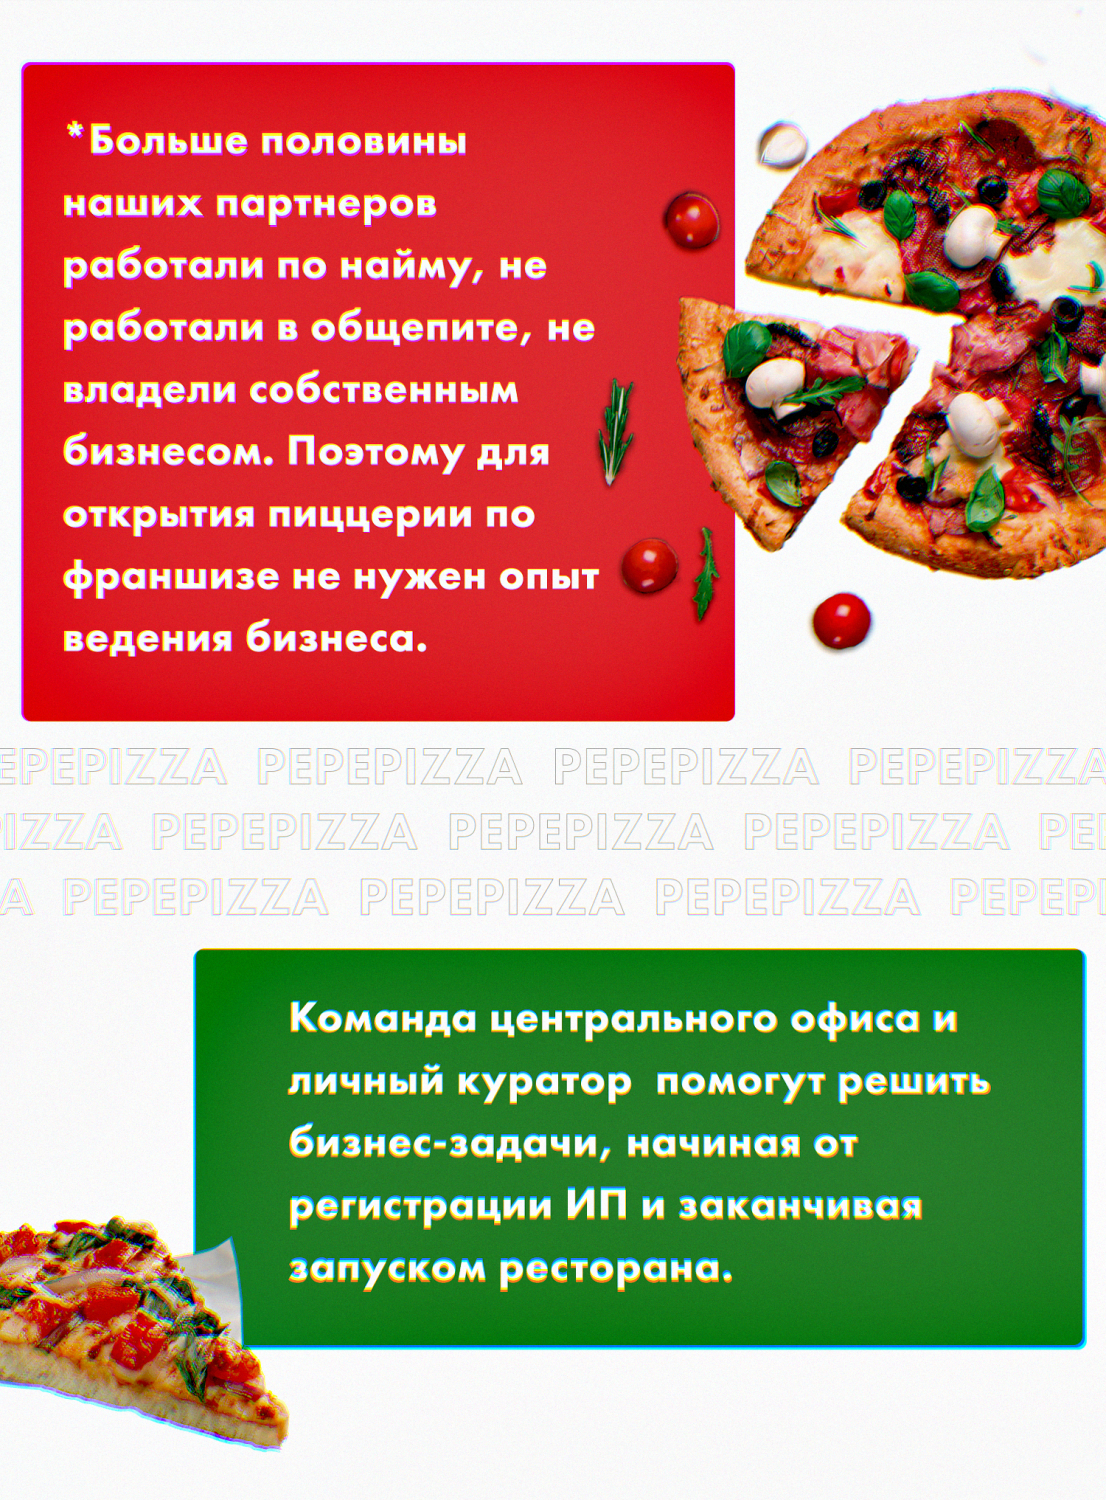 франшиза пиццерии